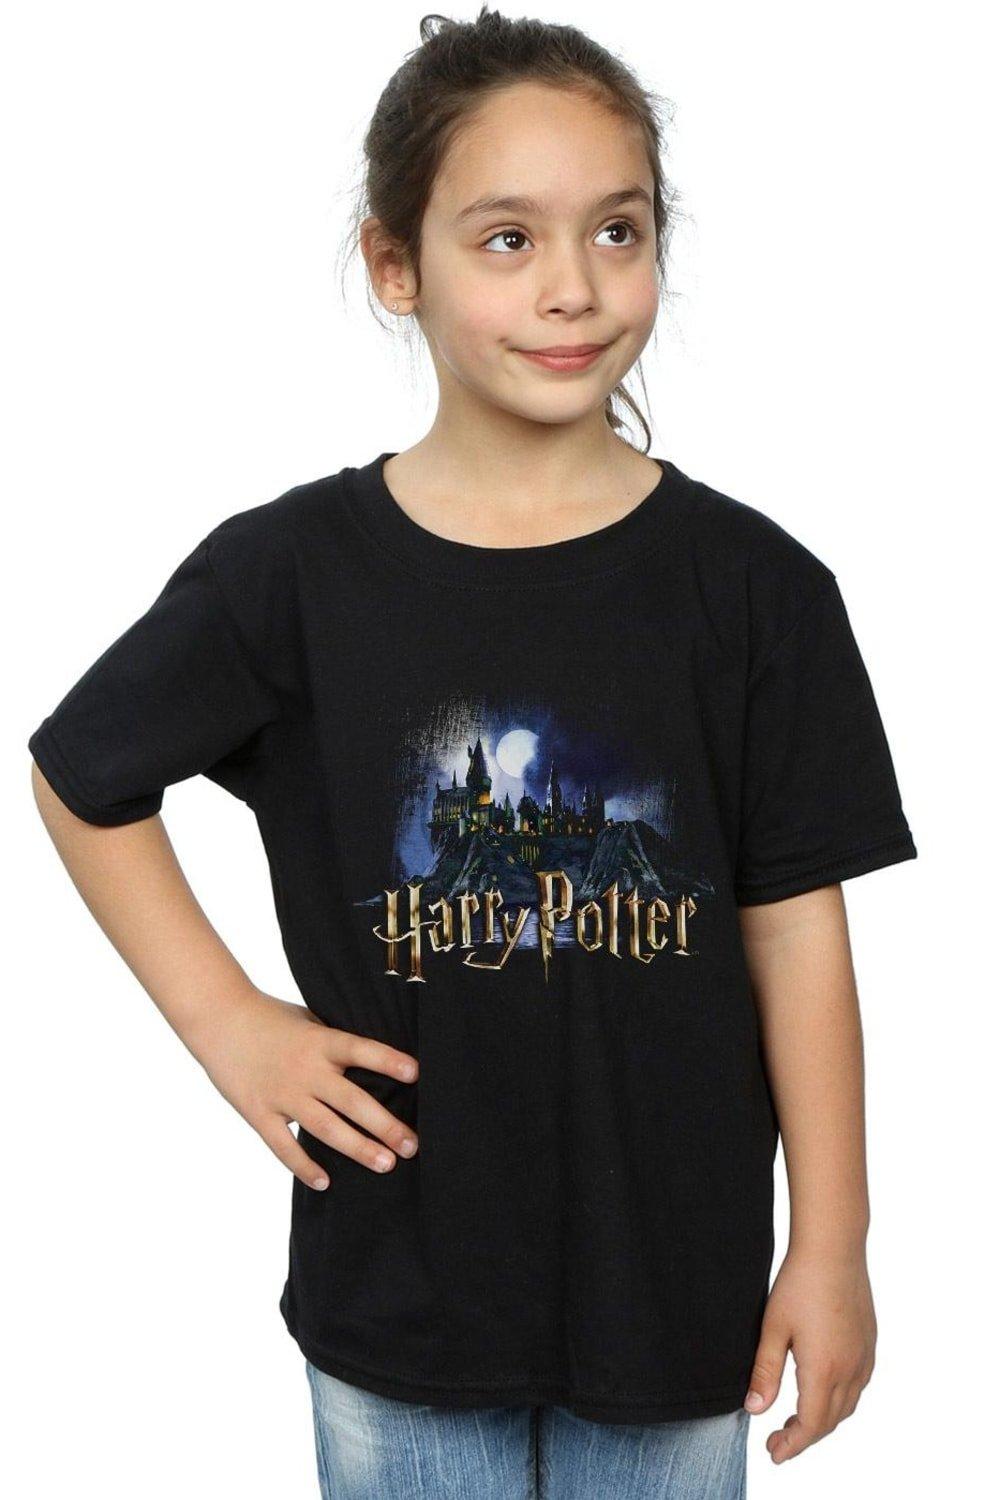 Hogwarts Castle Cotton T-Shirt